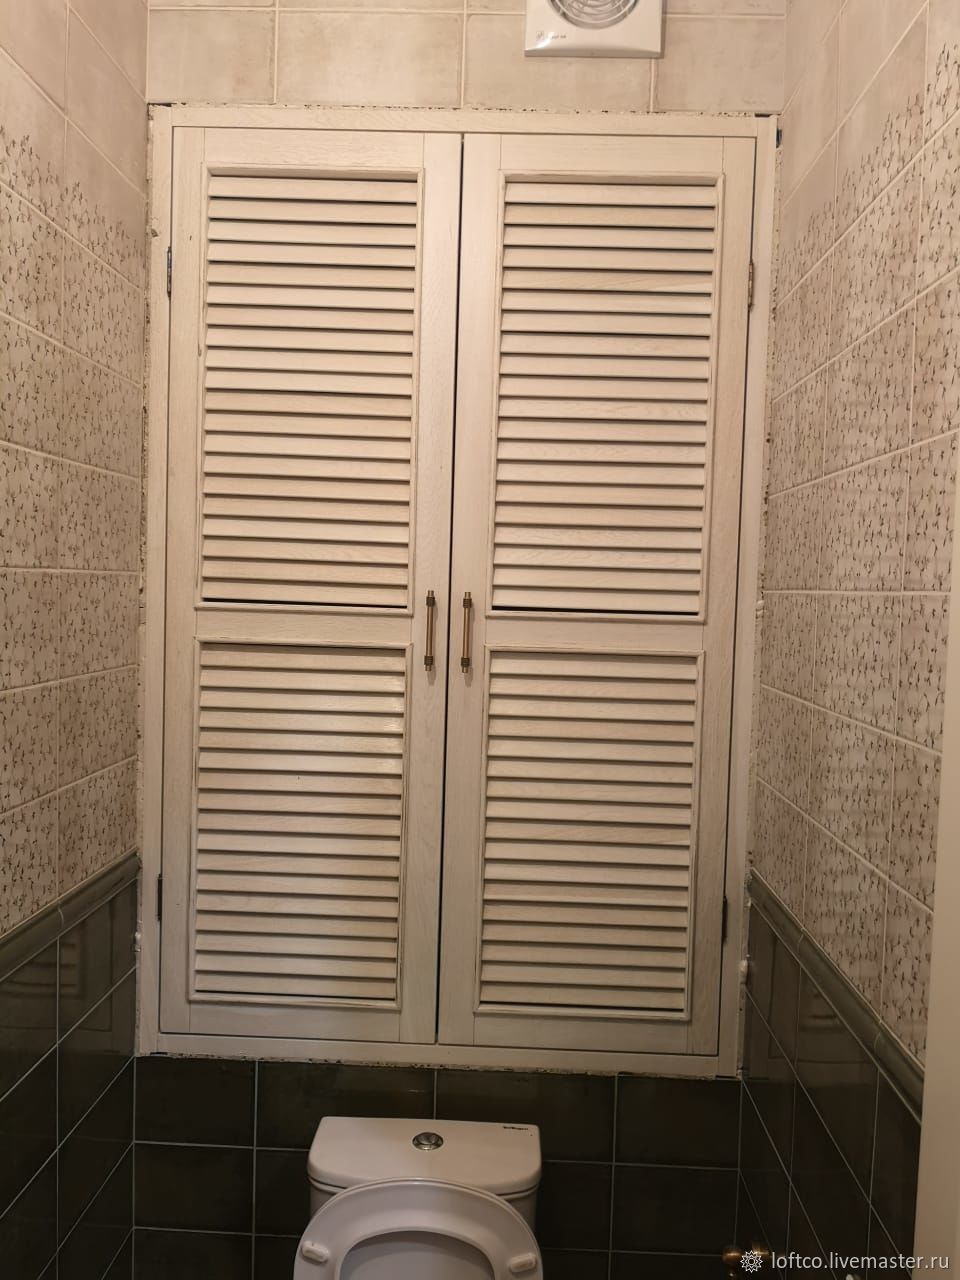 Дверки для шкафа в туалет